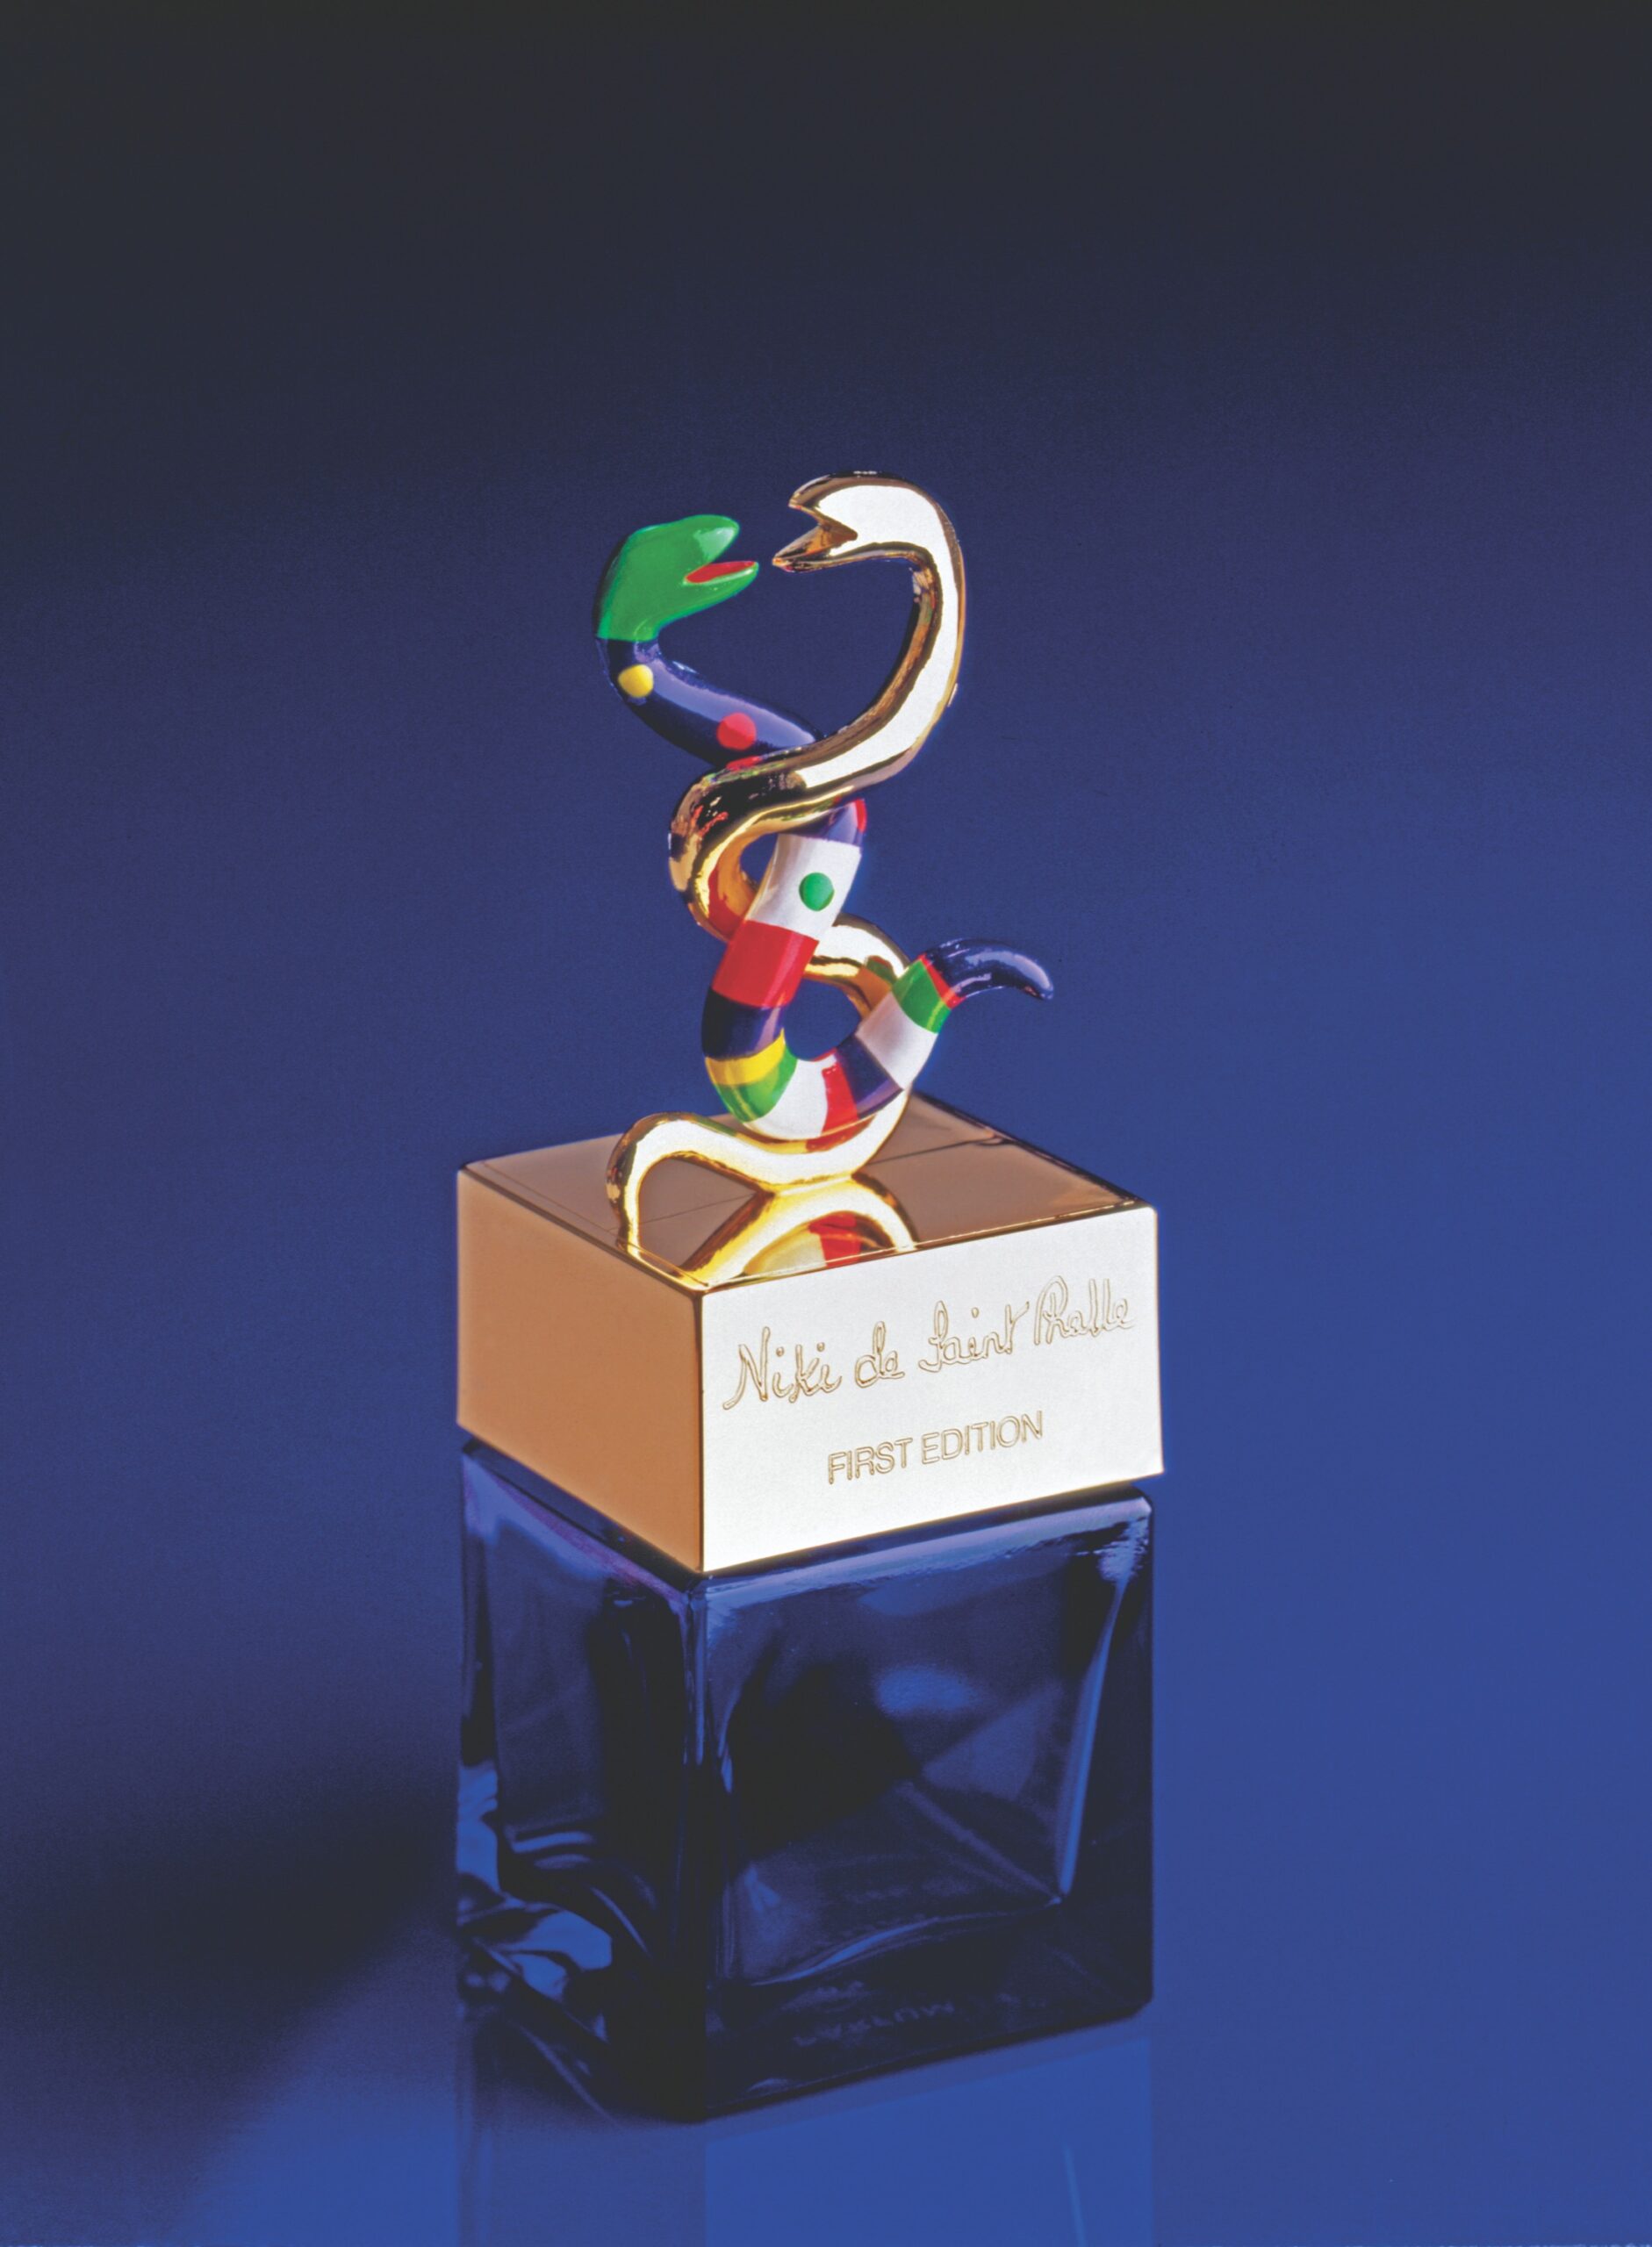 Niki de Saint Phalle (1930-2002), Flacon de parfum, 1982. Verre et plastique, 35 x 12 x 12cm. Collection Dumetz-Grenouilleau. © Niki Charitable Art Foundation